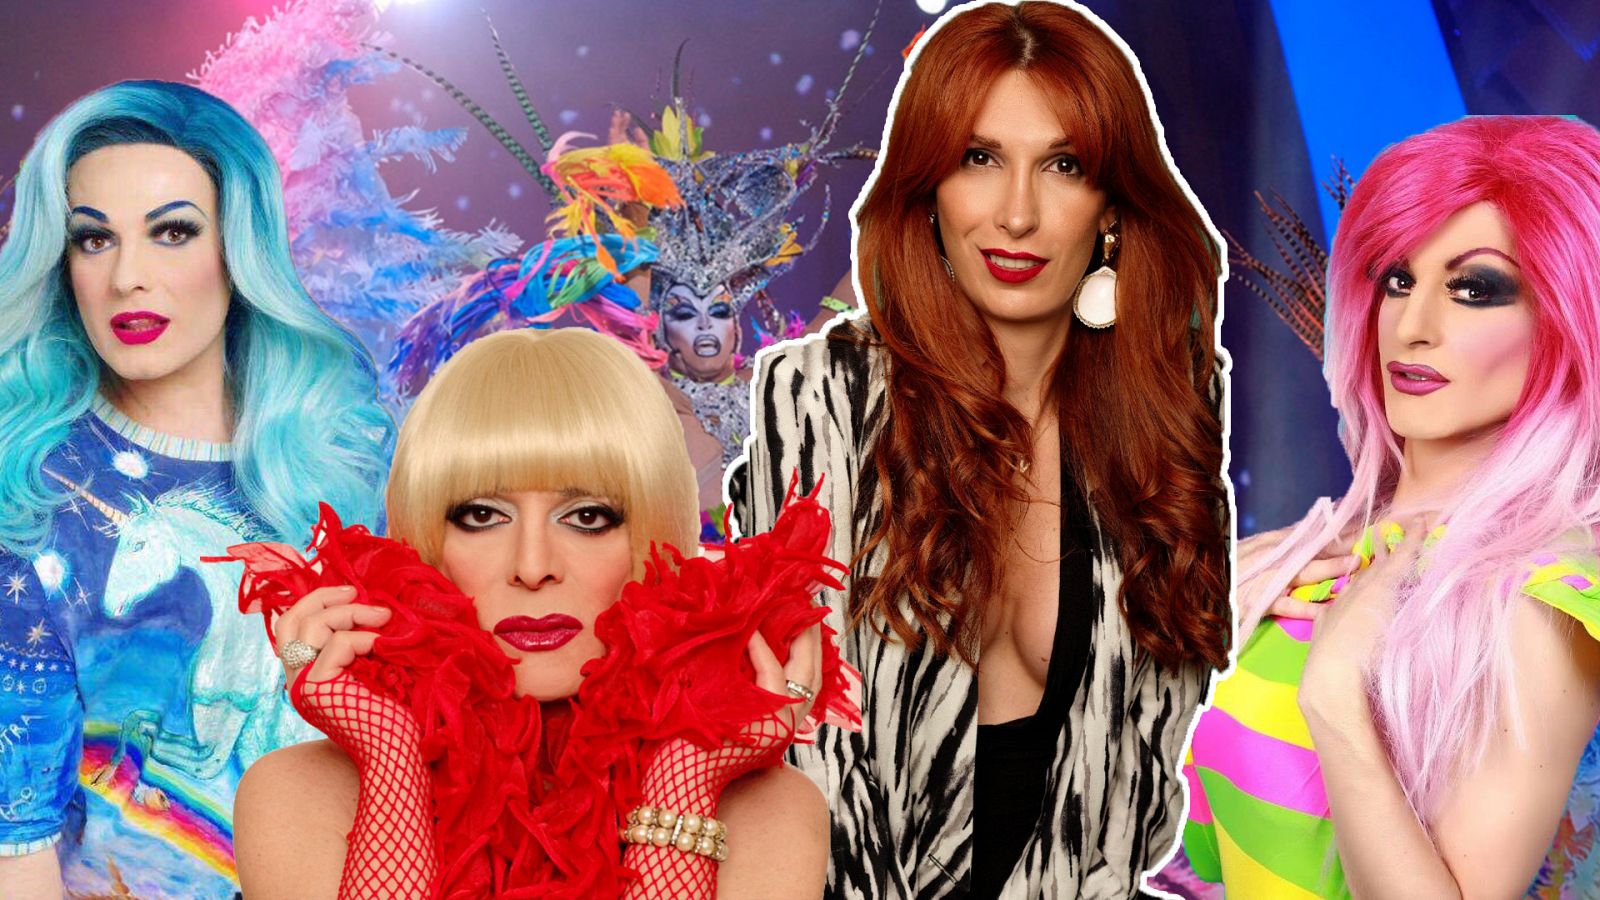 ¡Dale al play! - Valeria Vegas explica las diferencias entre 'drag queen' y travestismo